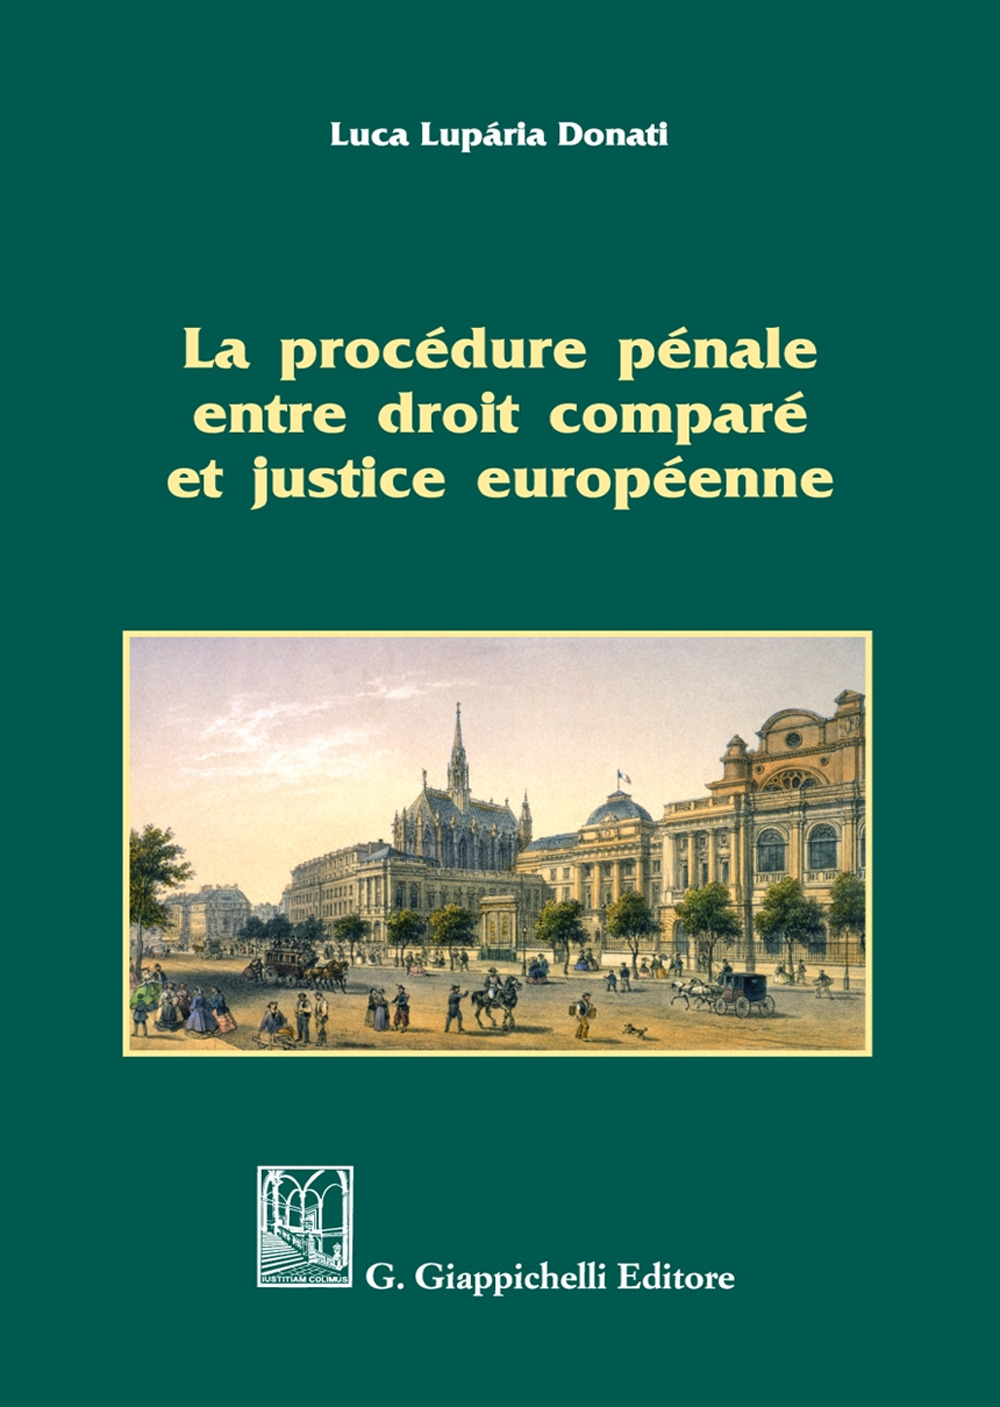 La procédure pénale entre droit comparé et justice européenne